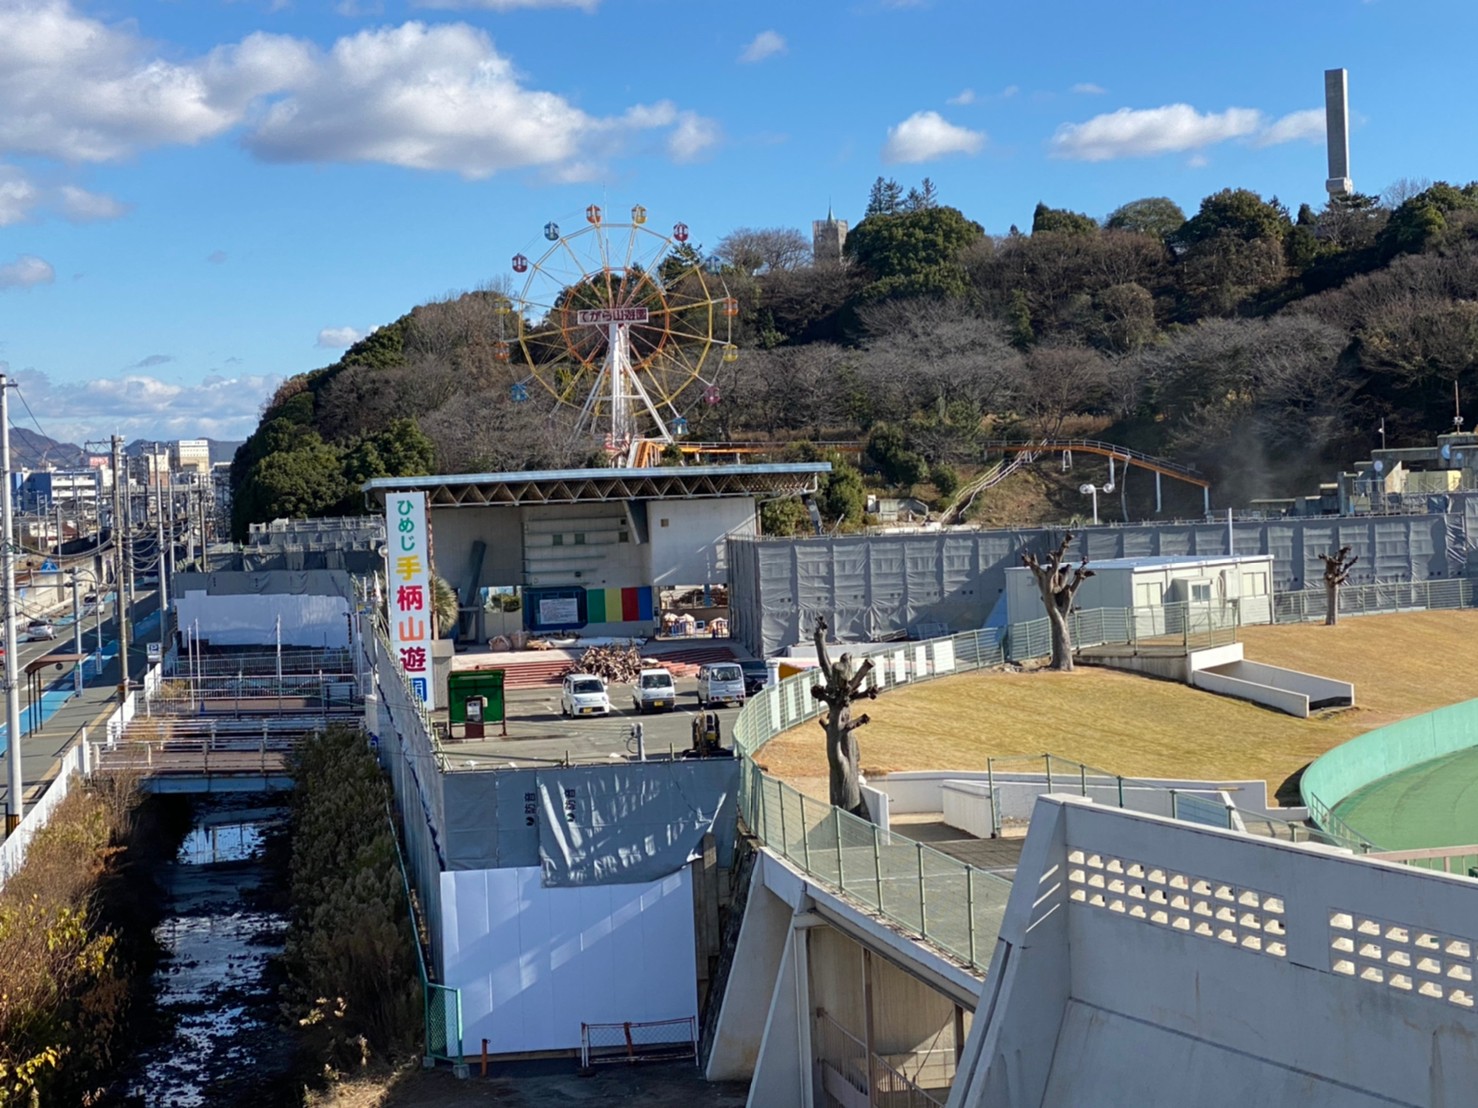 閉園した姫路市民プール 手柄山遊園地 の撤去工事が始まってる 姫路の種